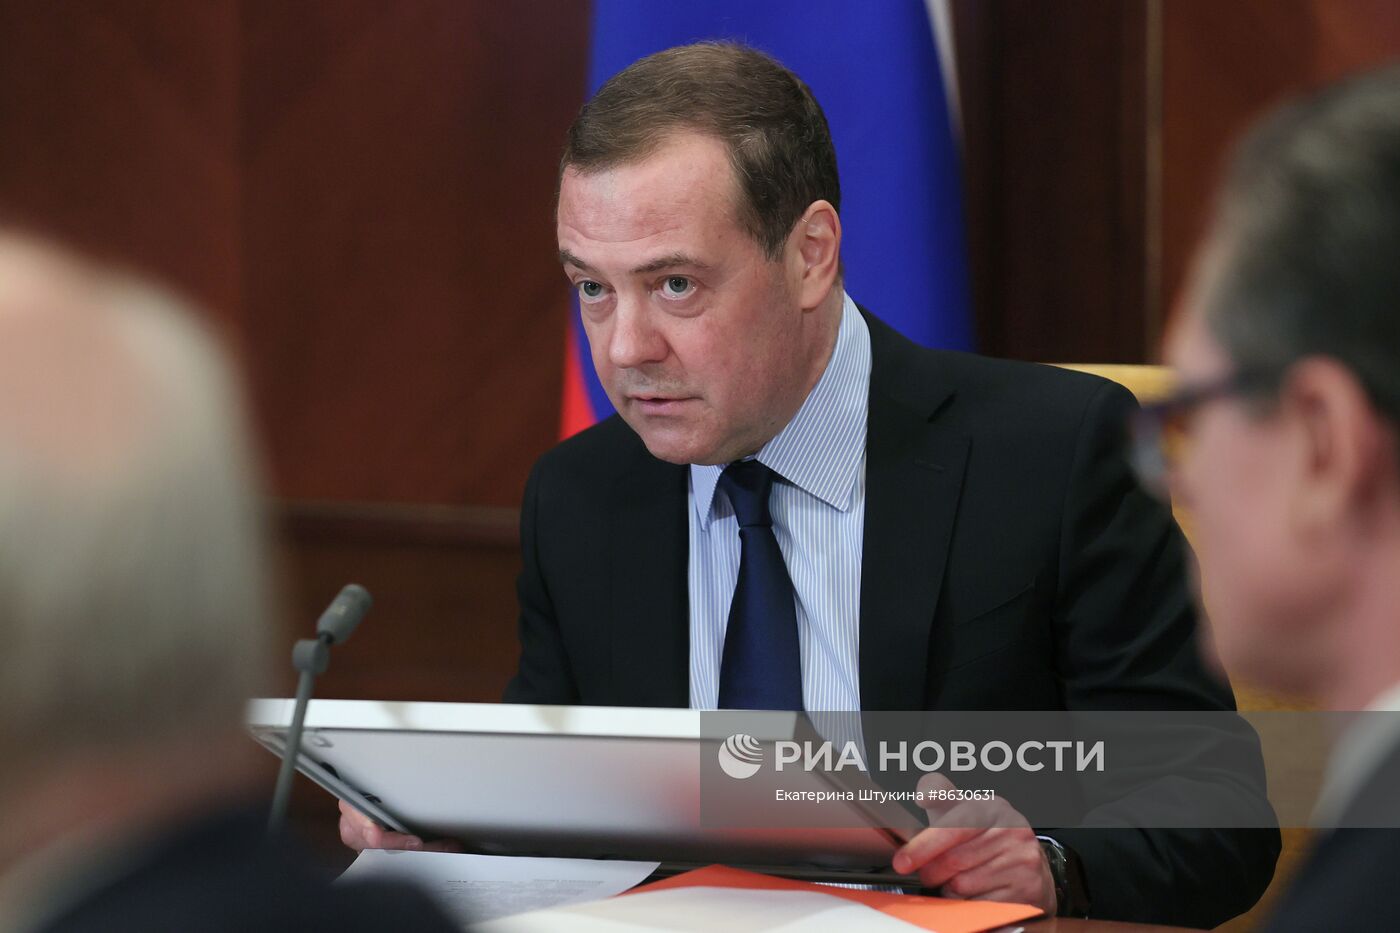 Зампред Совбеза РФ Д. Медведев провел заседание рабочей группы Военно-промышленной комиссии РФ